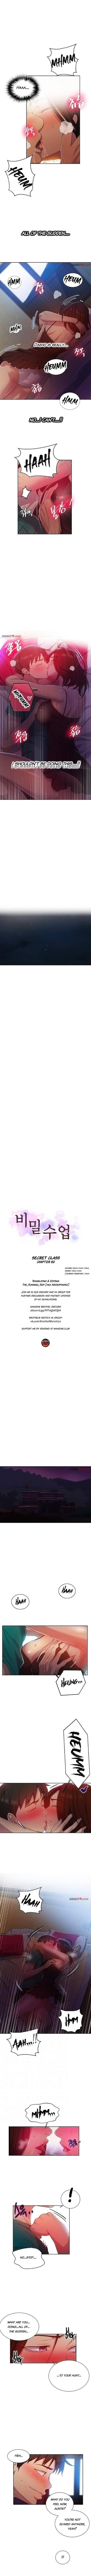 Secret Class - Page 1